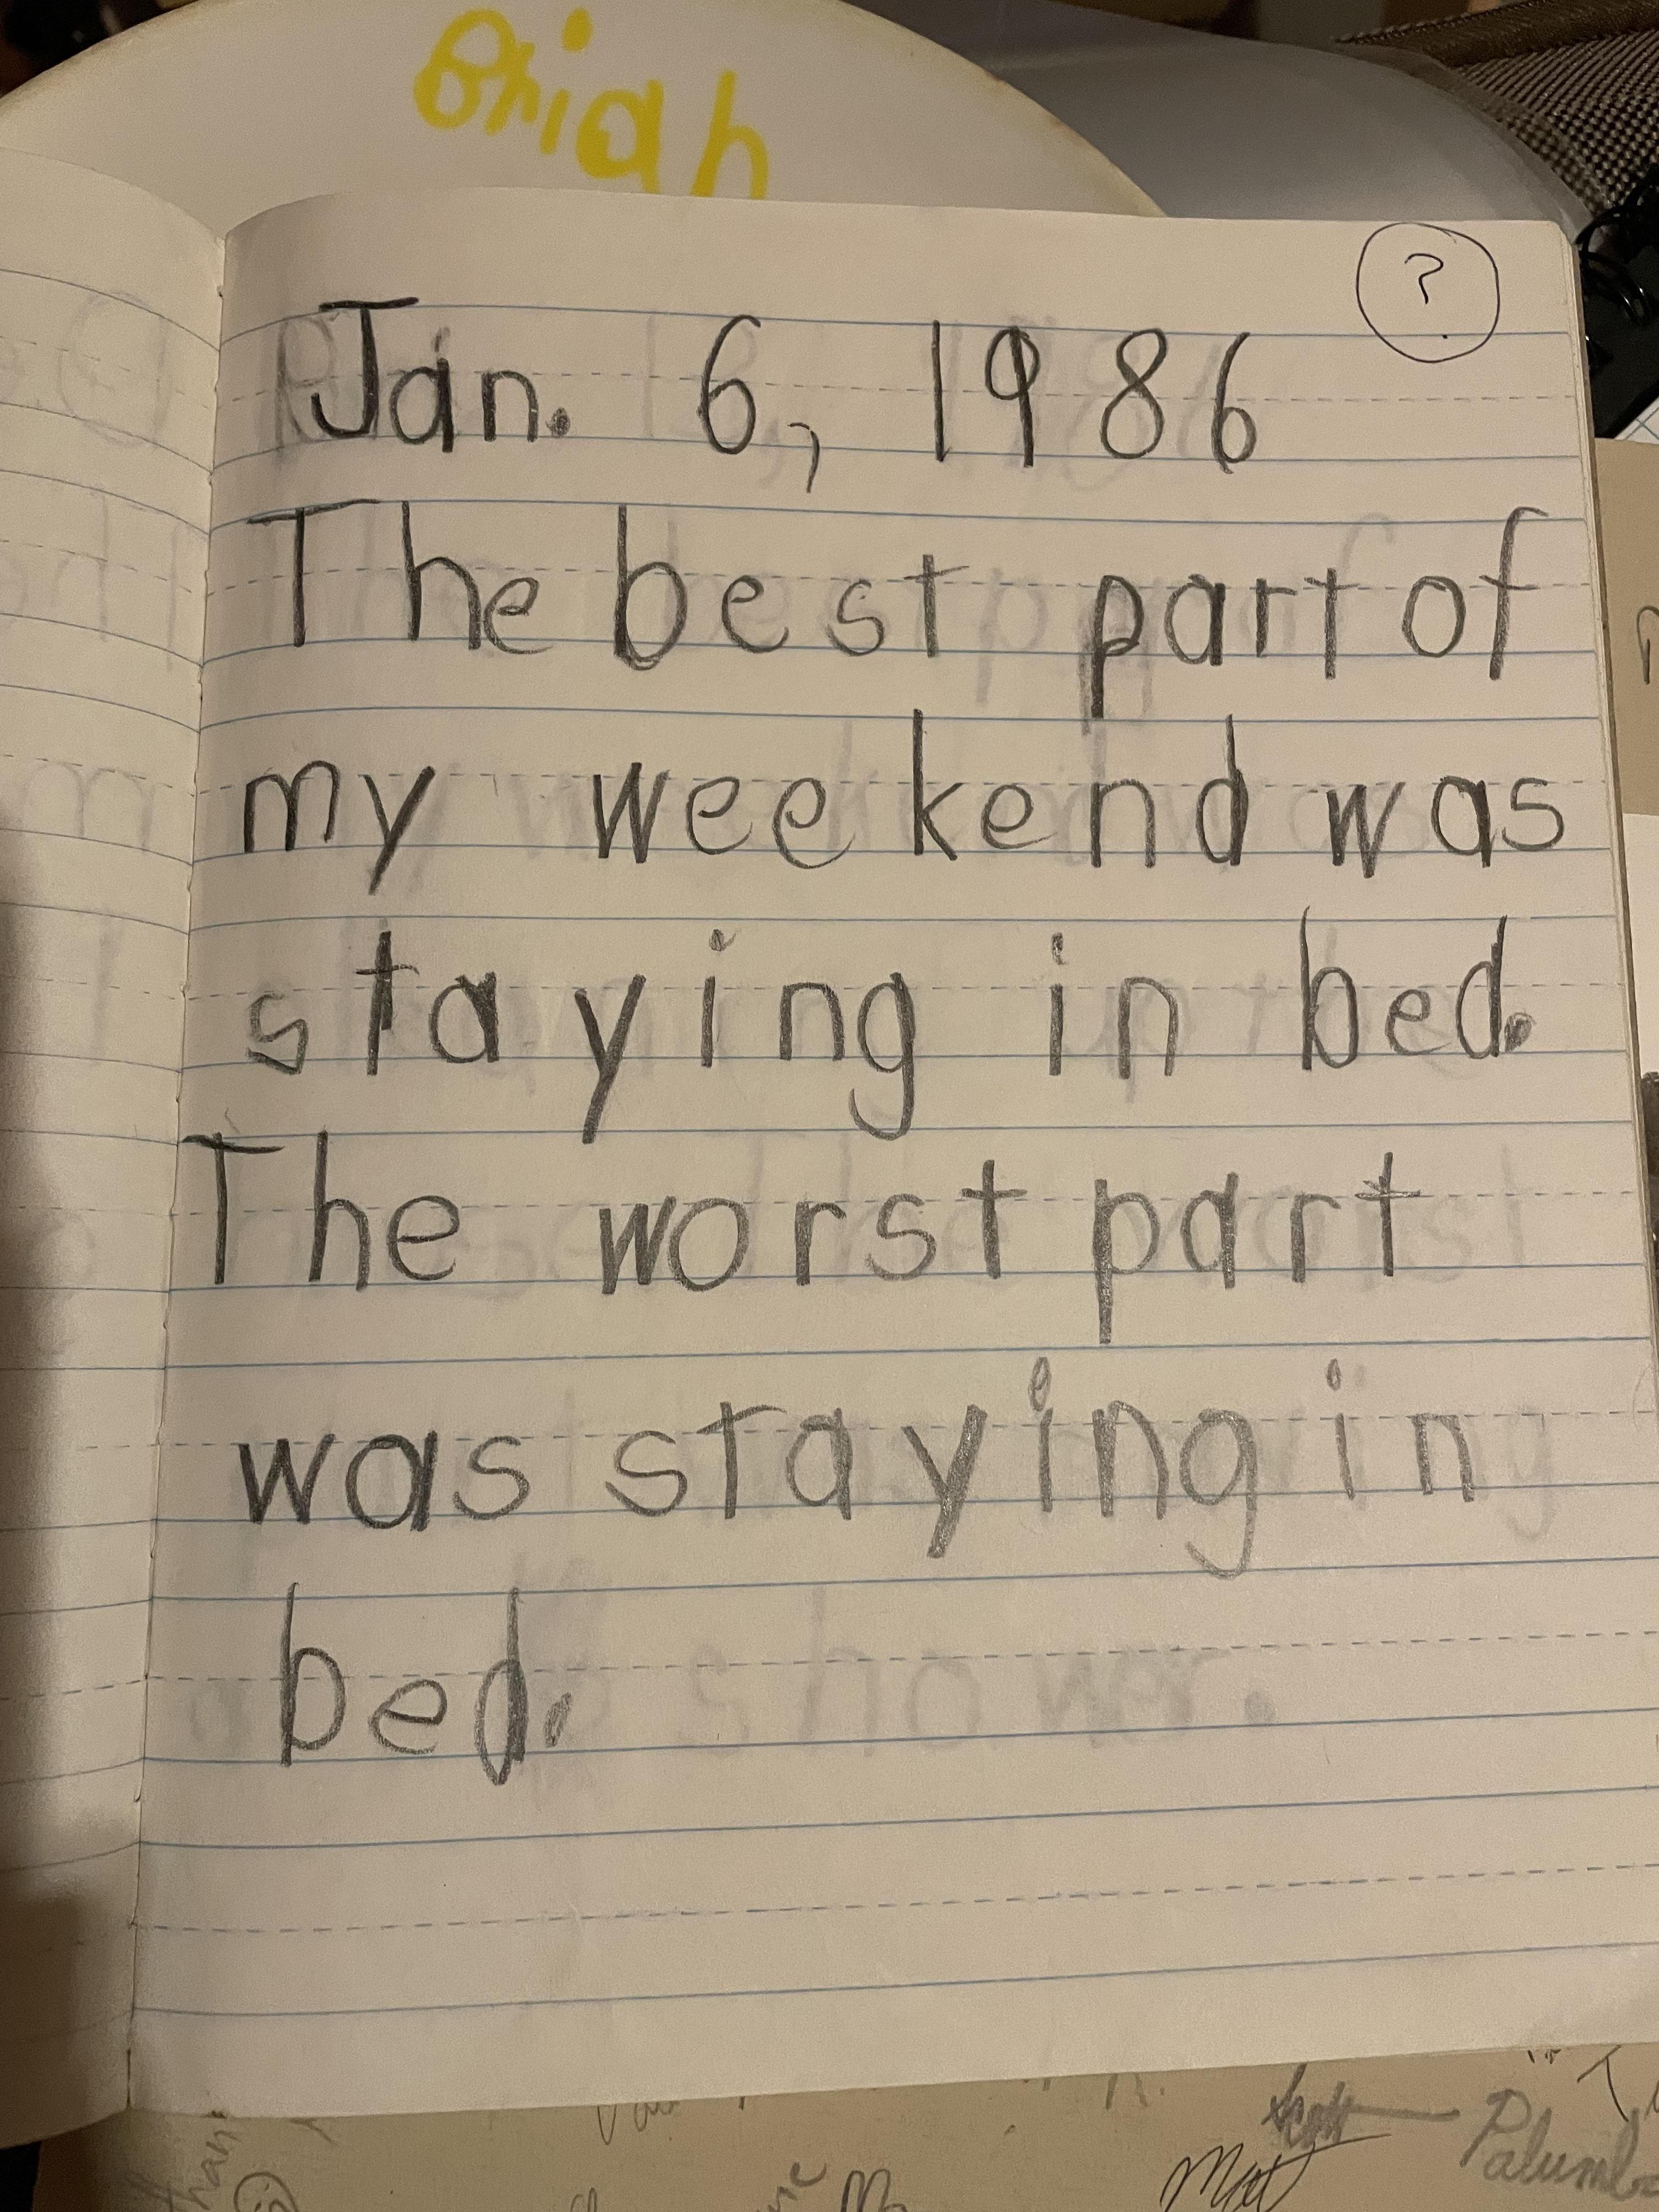 I think I peaked philosophically at age 6.